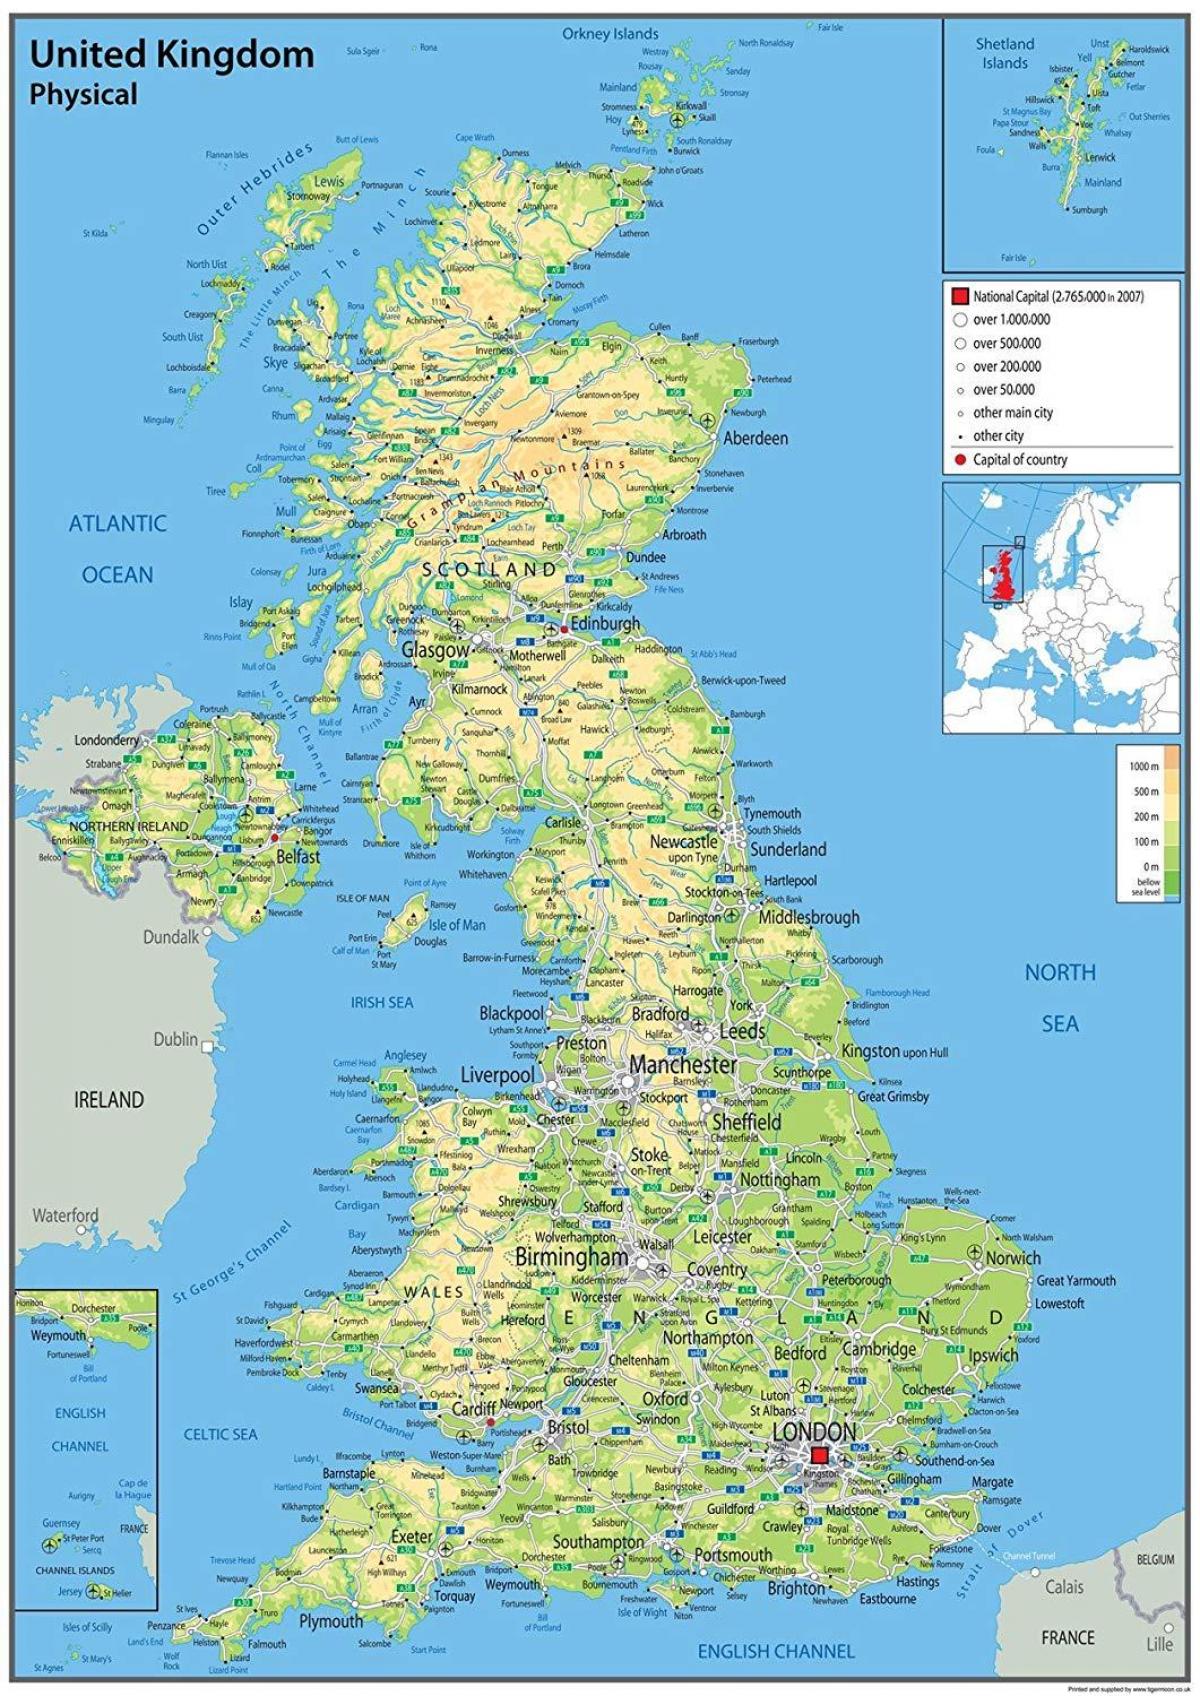 United Kingdom (UK) landform map